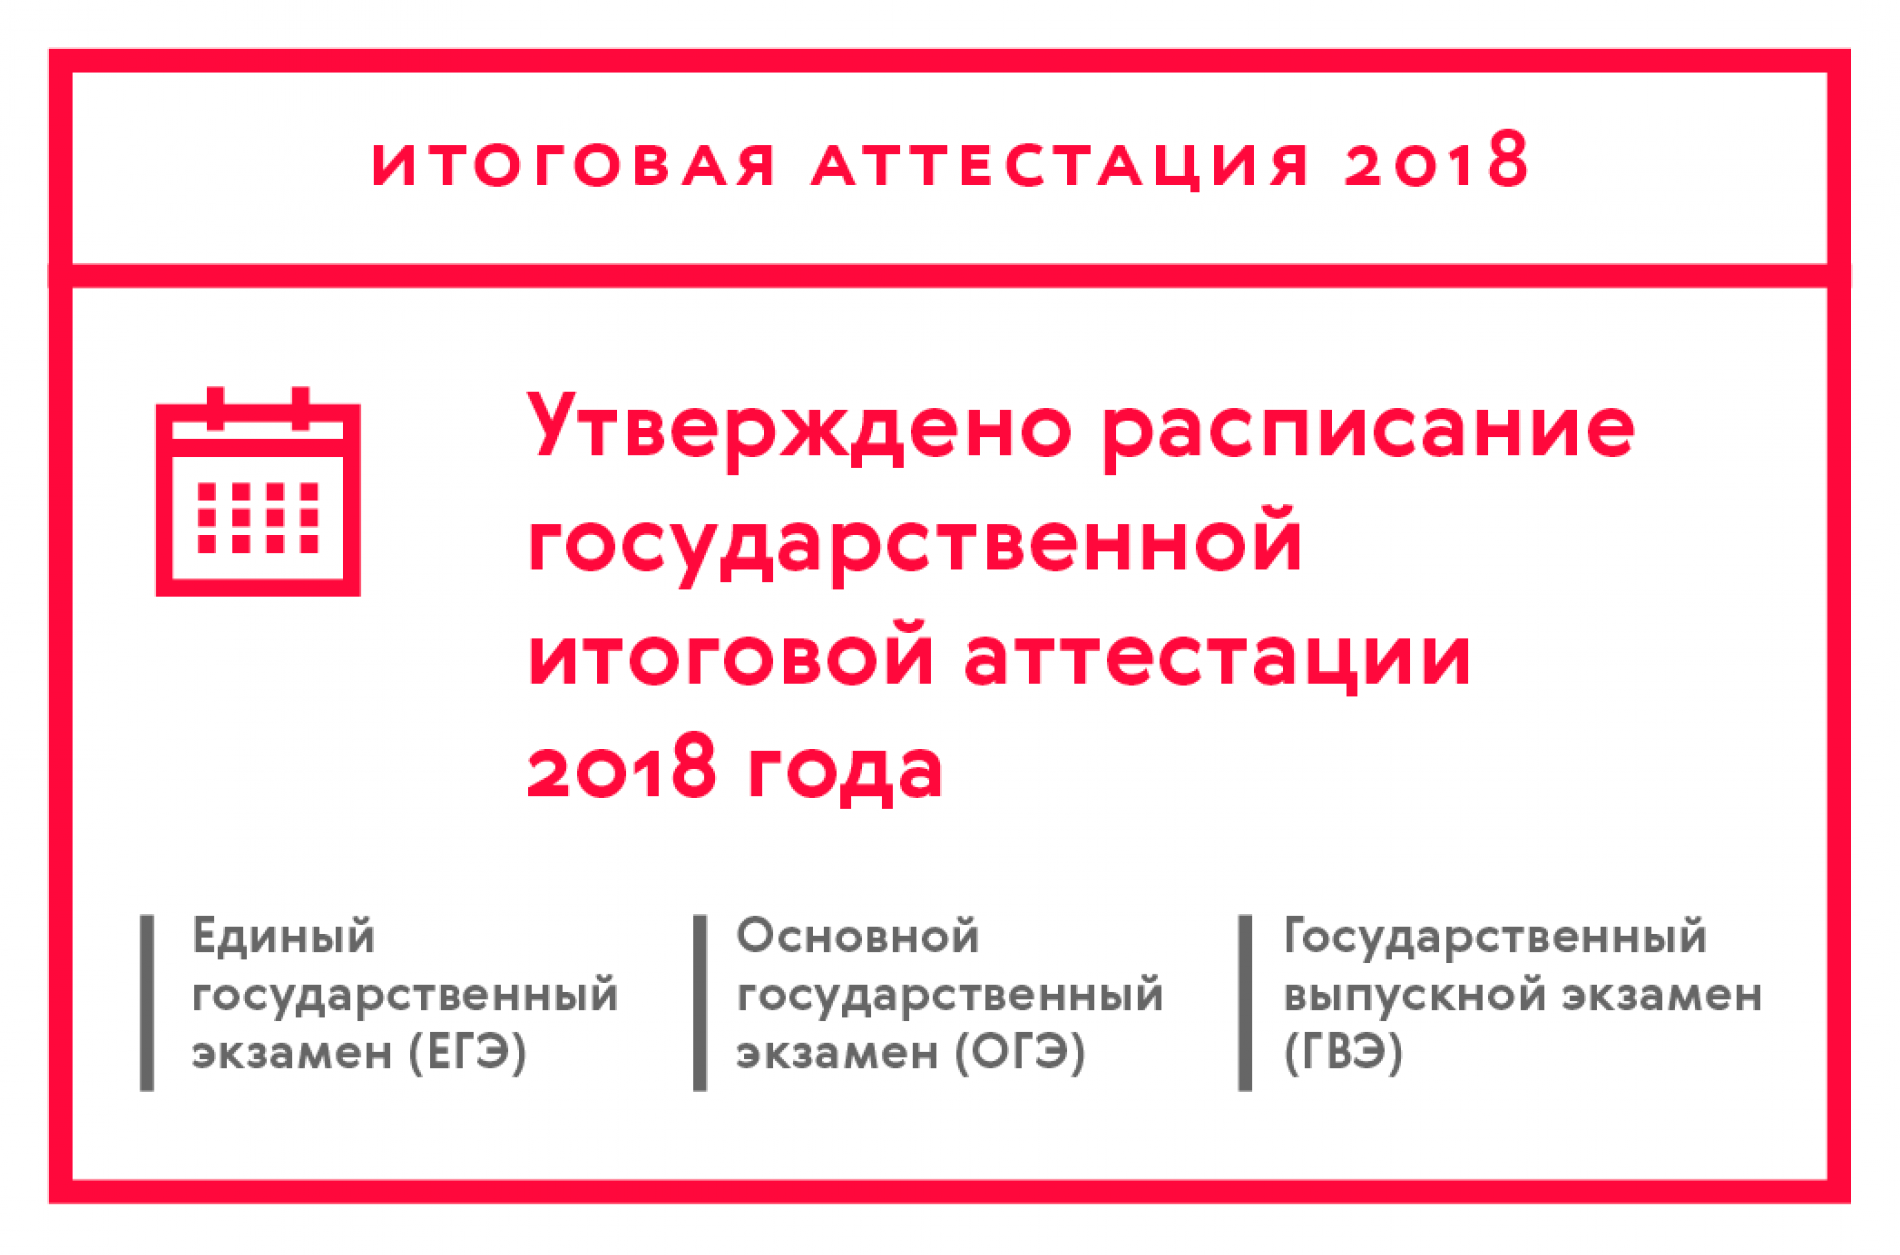 Утверждено расписание государственной итоговой аттестации 2018 года